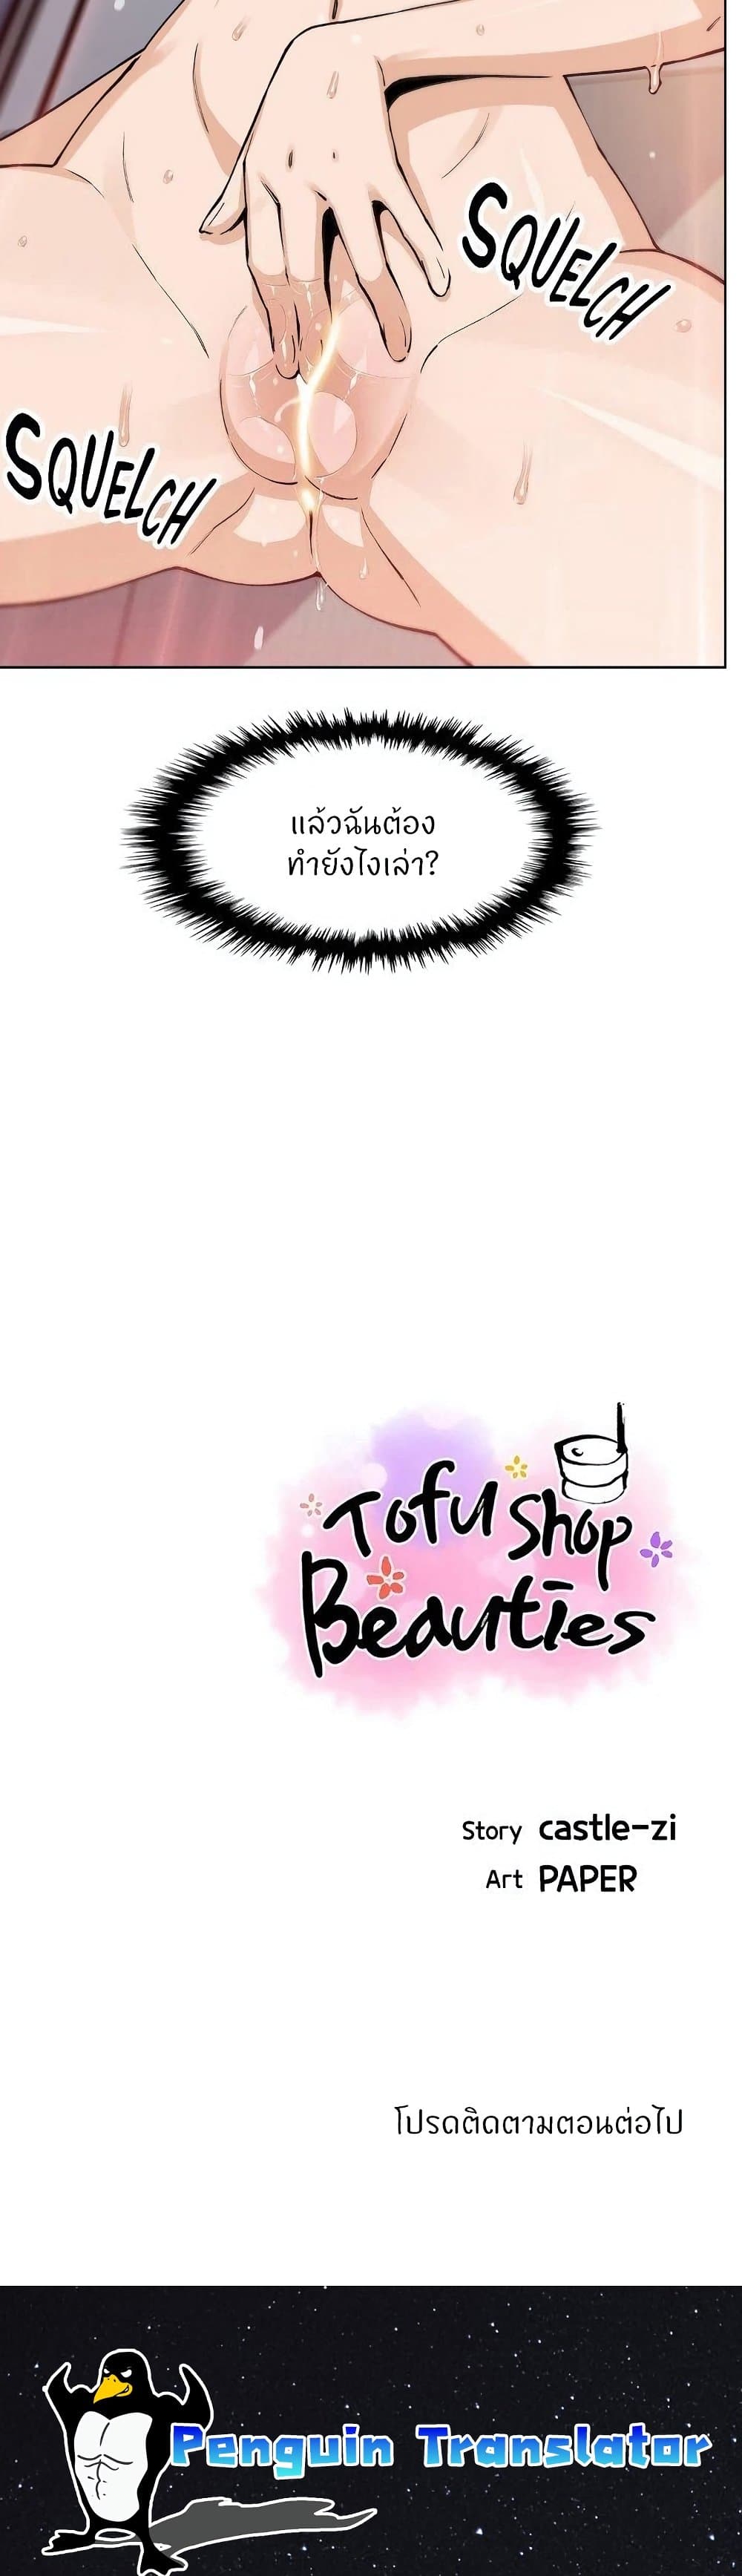 Tofu Shop Beauties 43 39